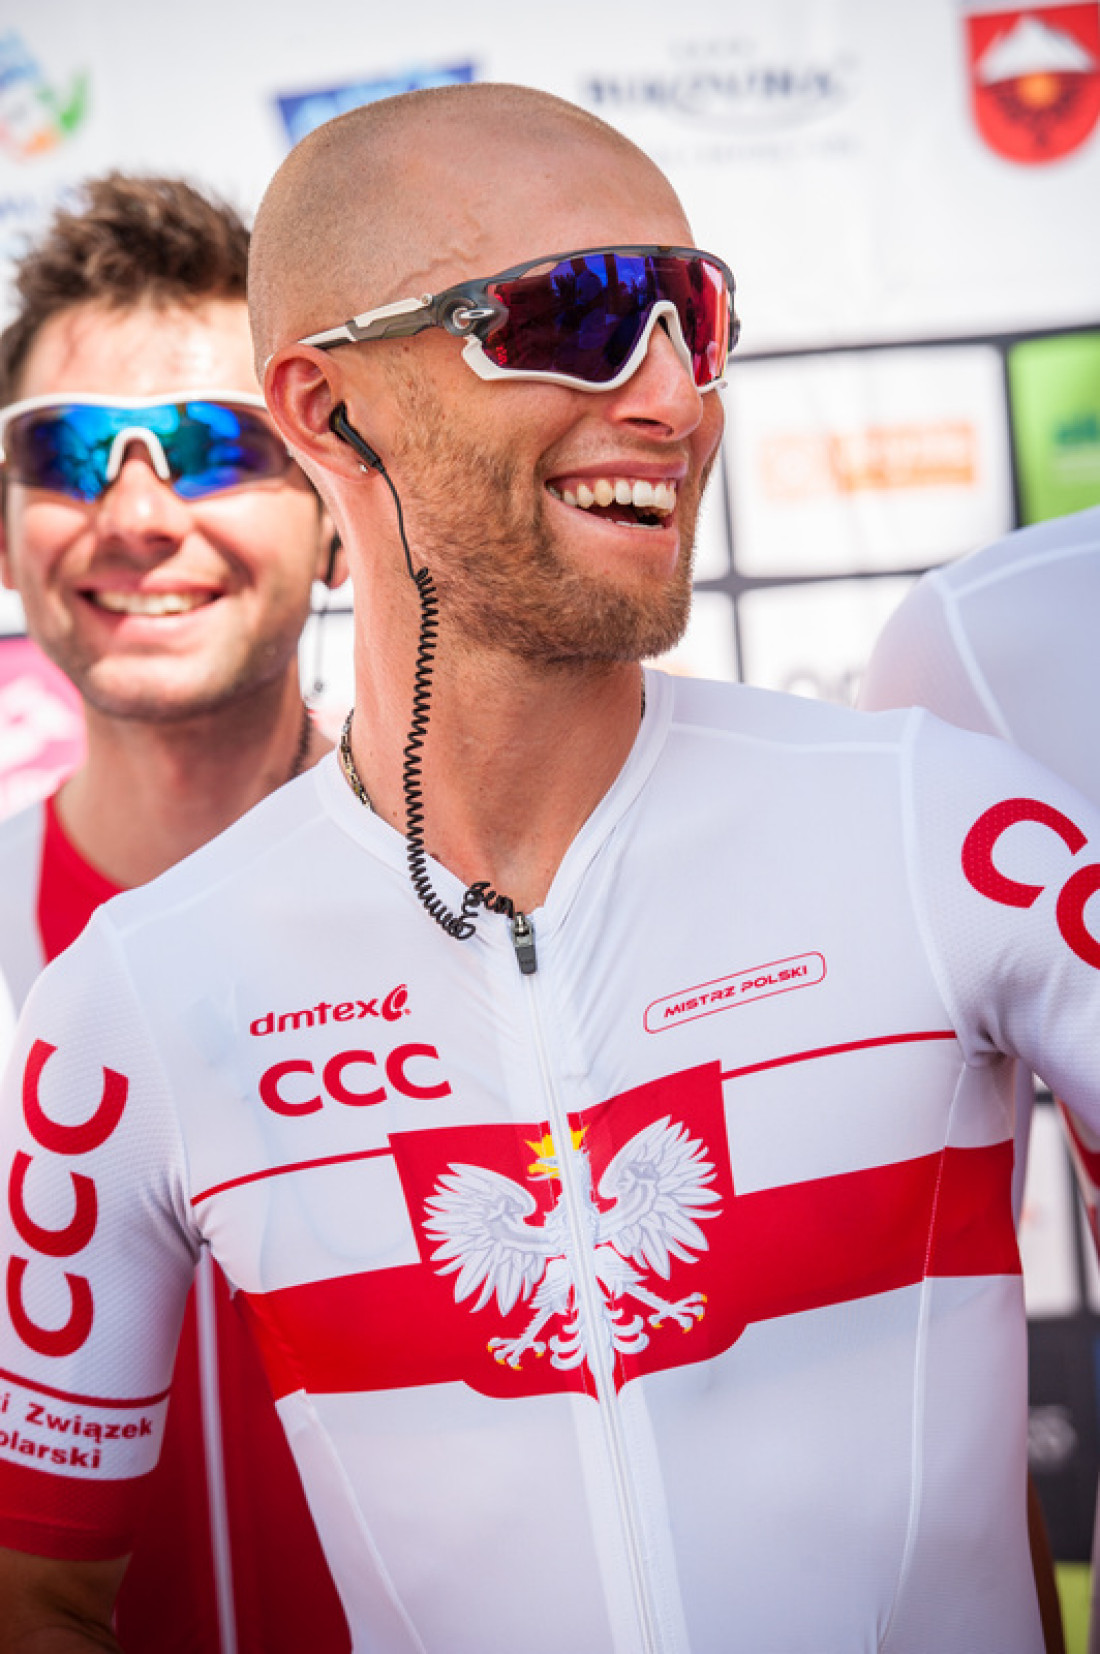 Mistrz Polski Tomasz Marczyński w drużynie kolarskiej sponsorowanej przez SOUDAL